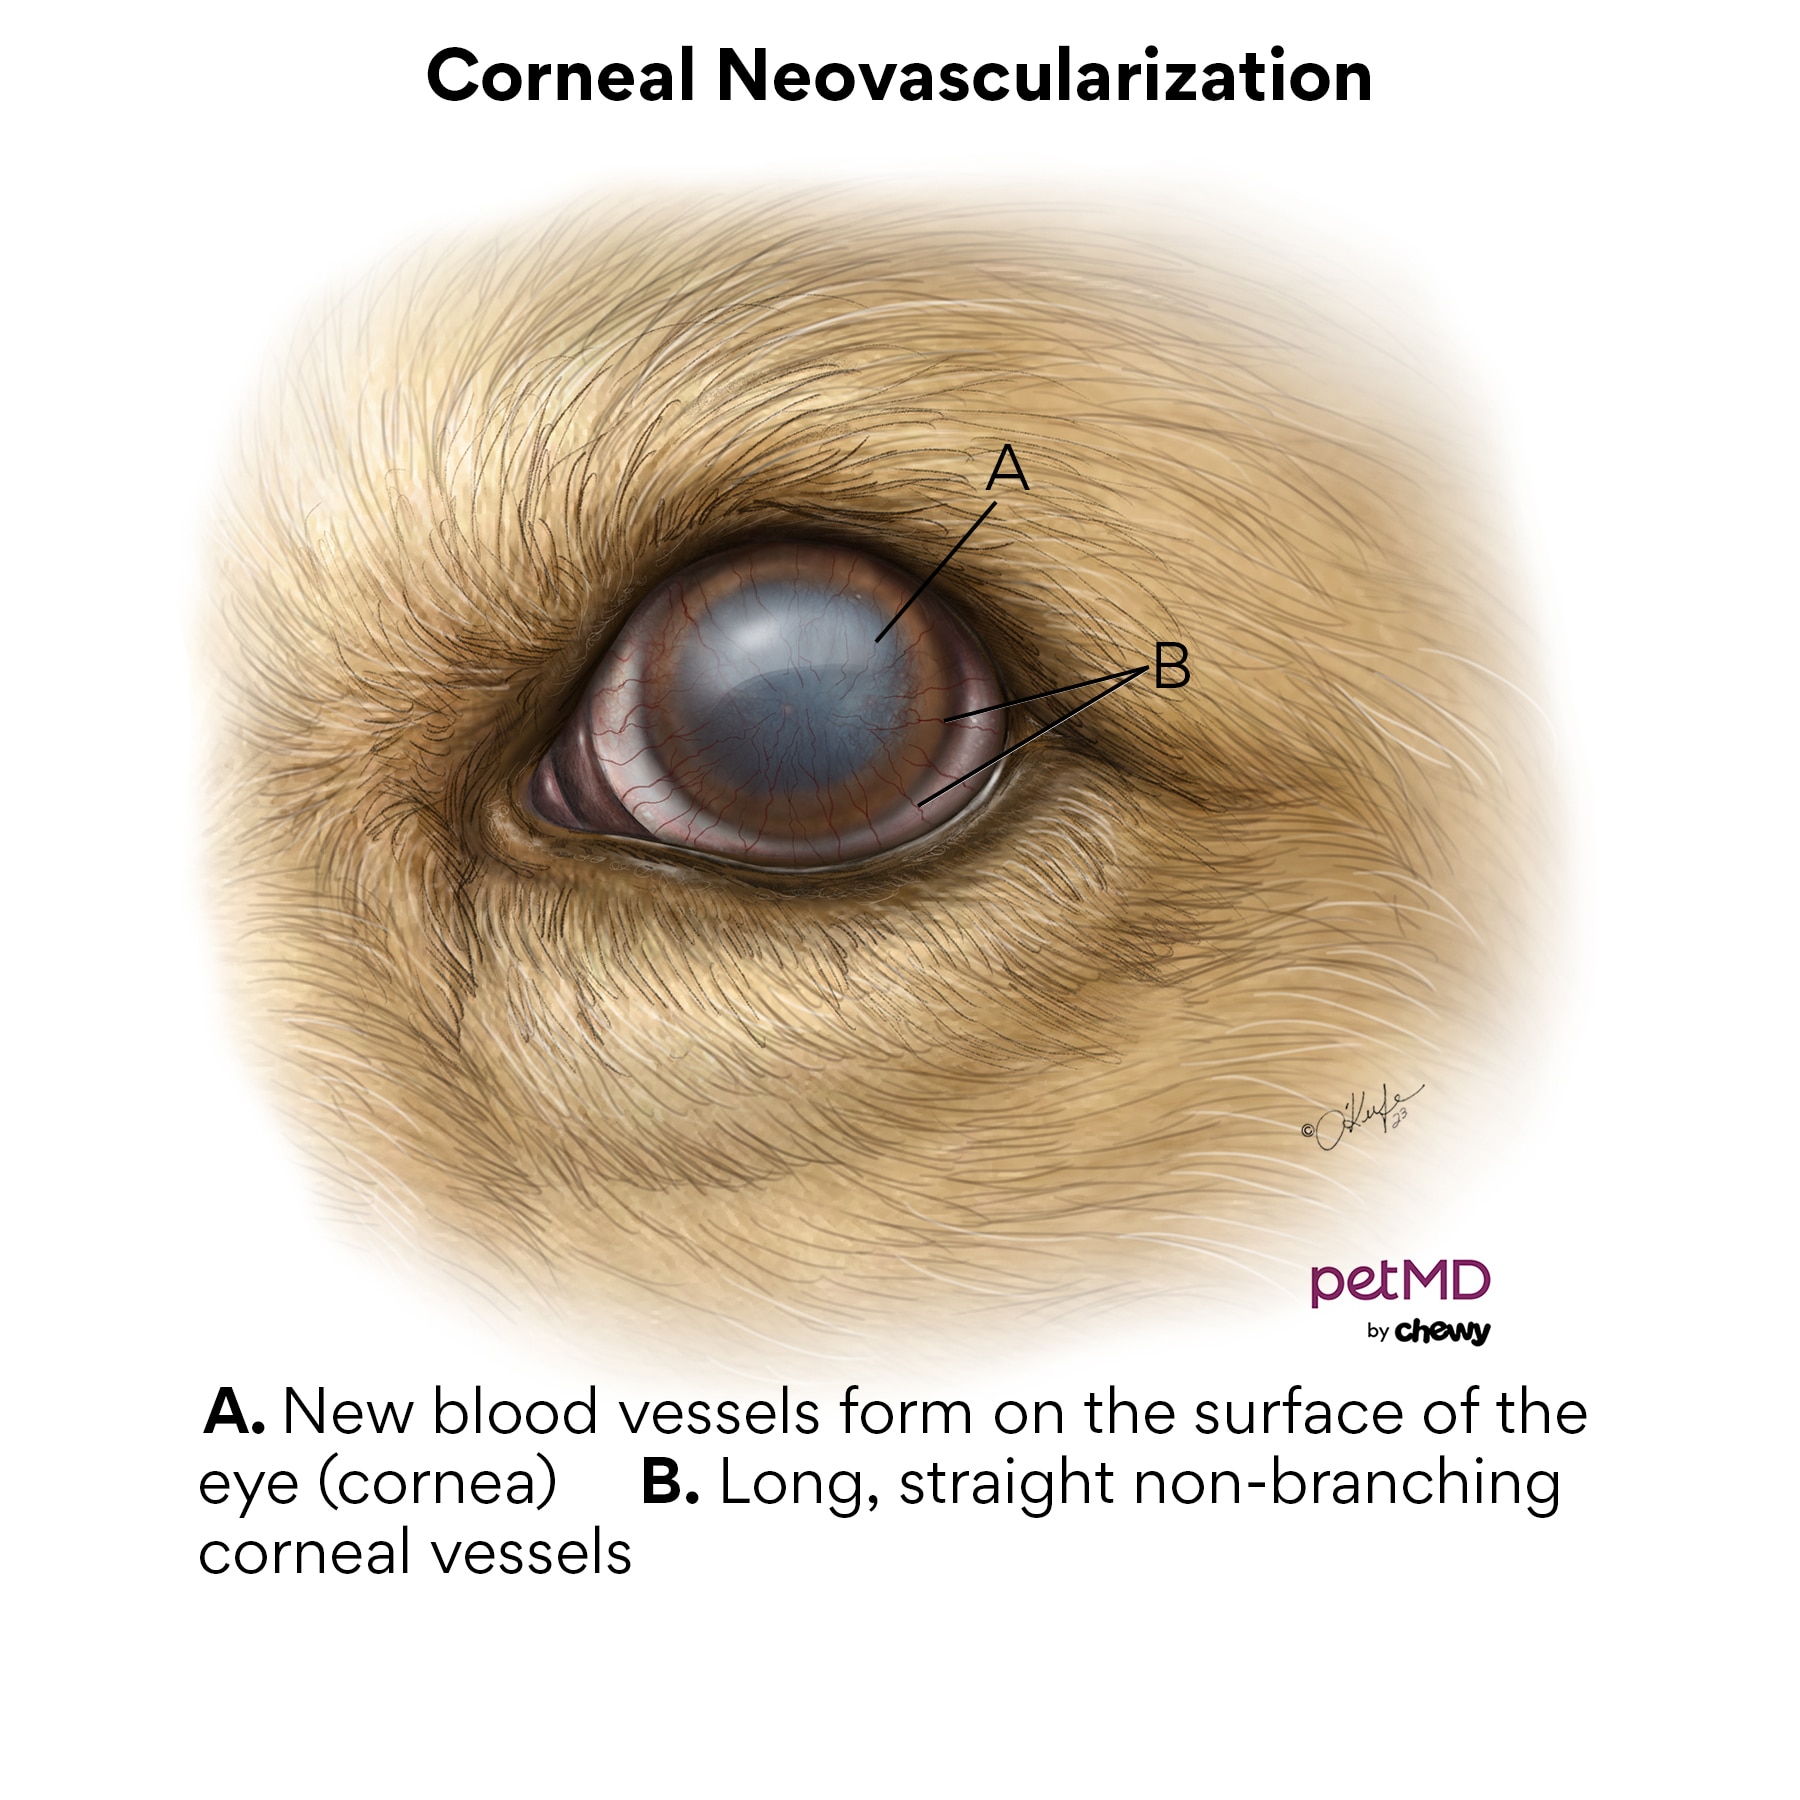 Corneal neovascularization